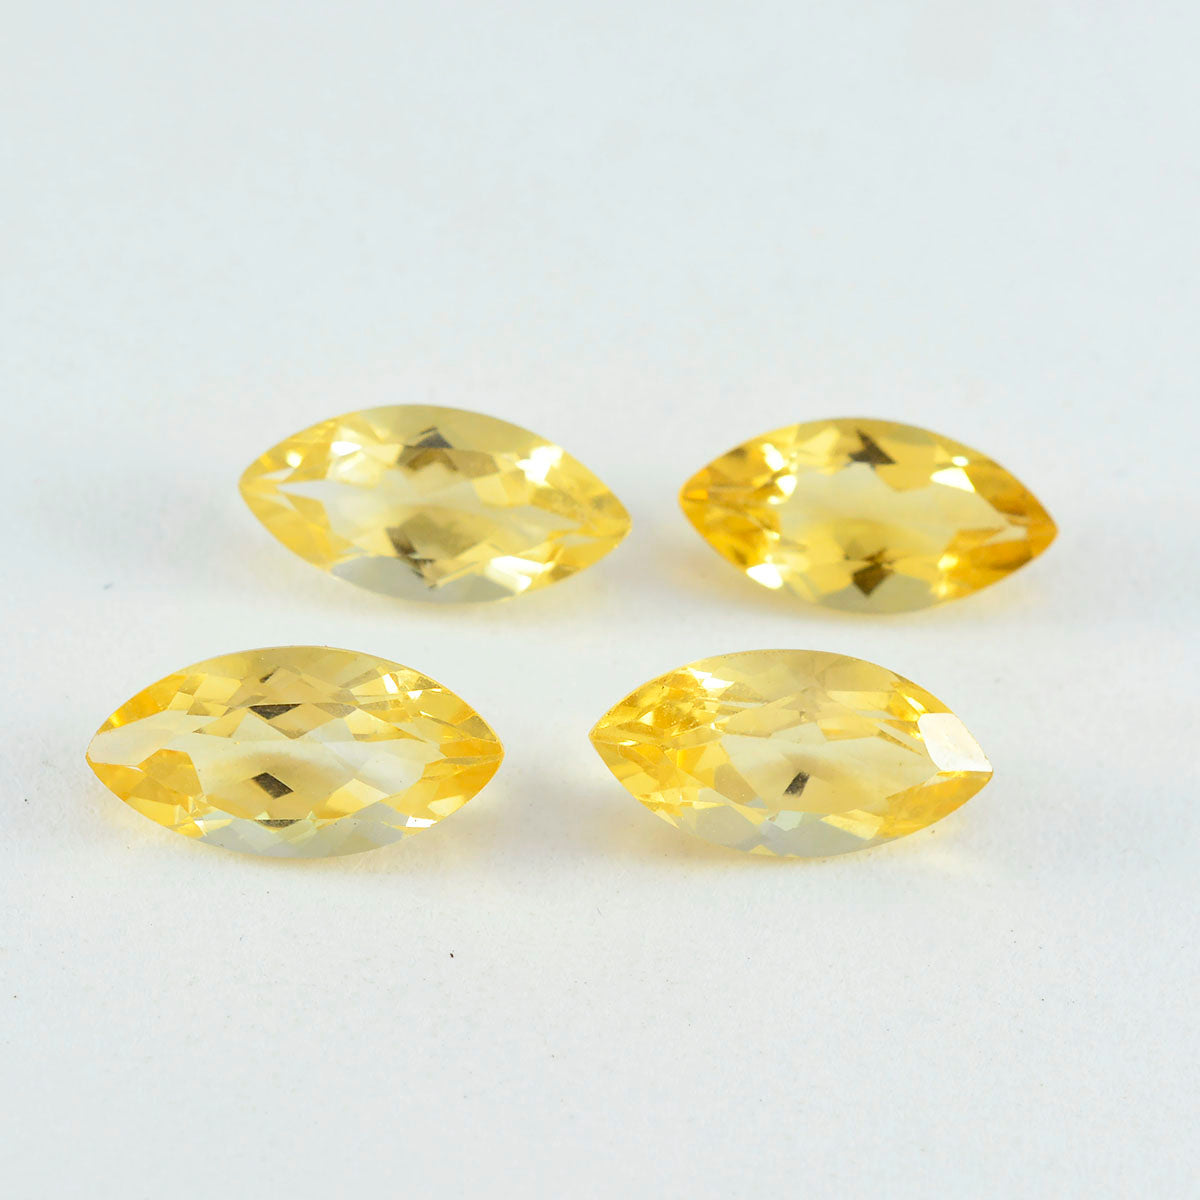 Riyogems 1pc véritable citrine jaune à facettes 8x16mm forme marquise a + 1 pierres précieuses de qualité